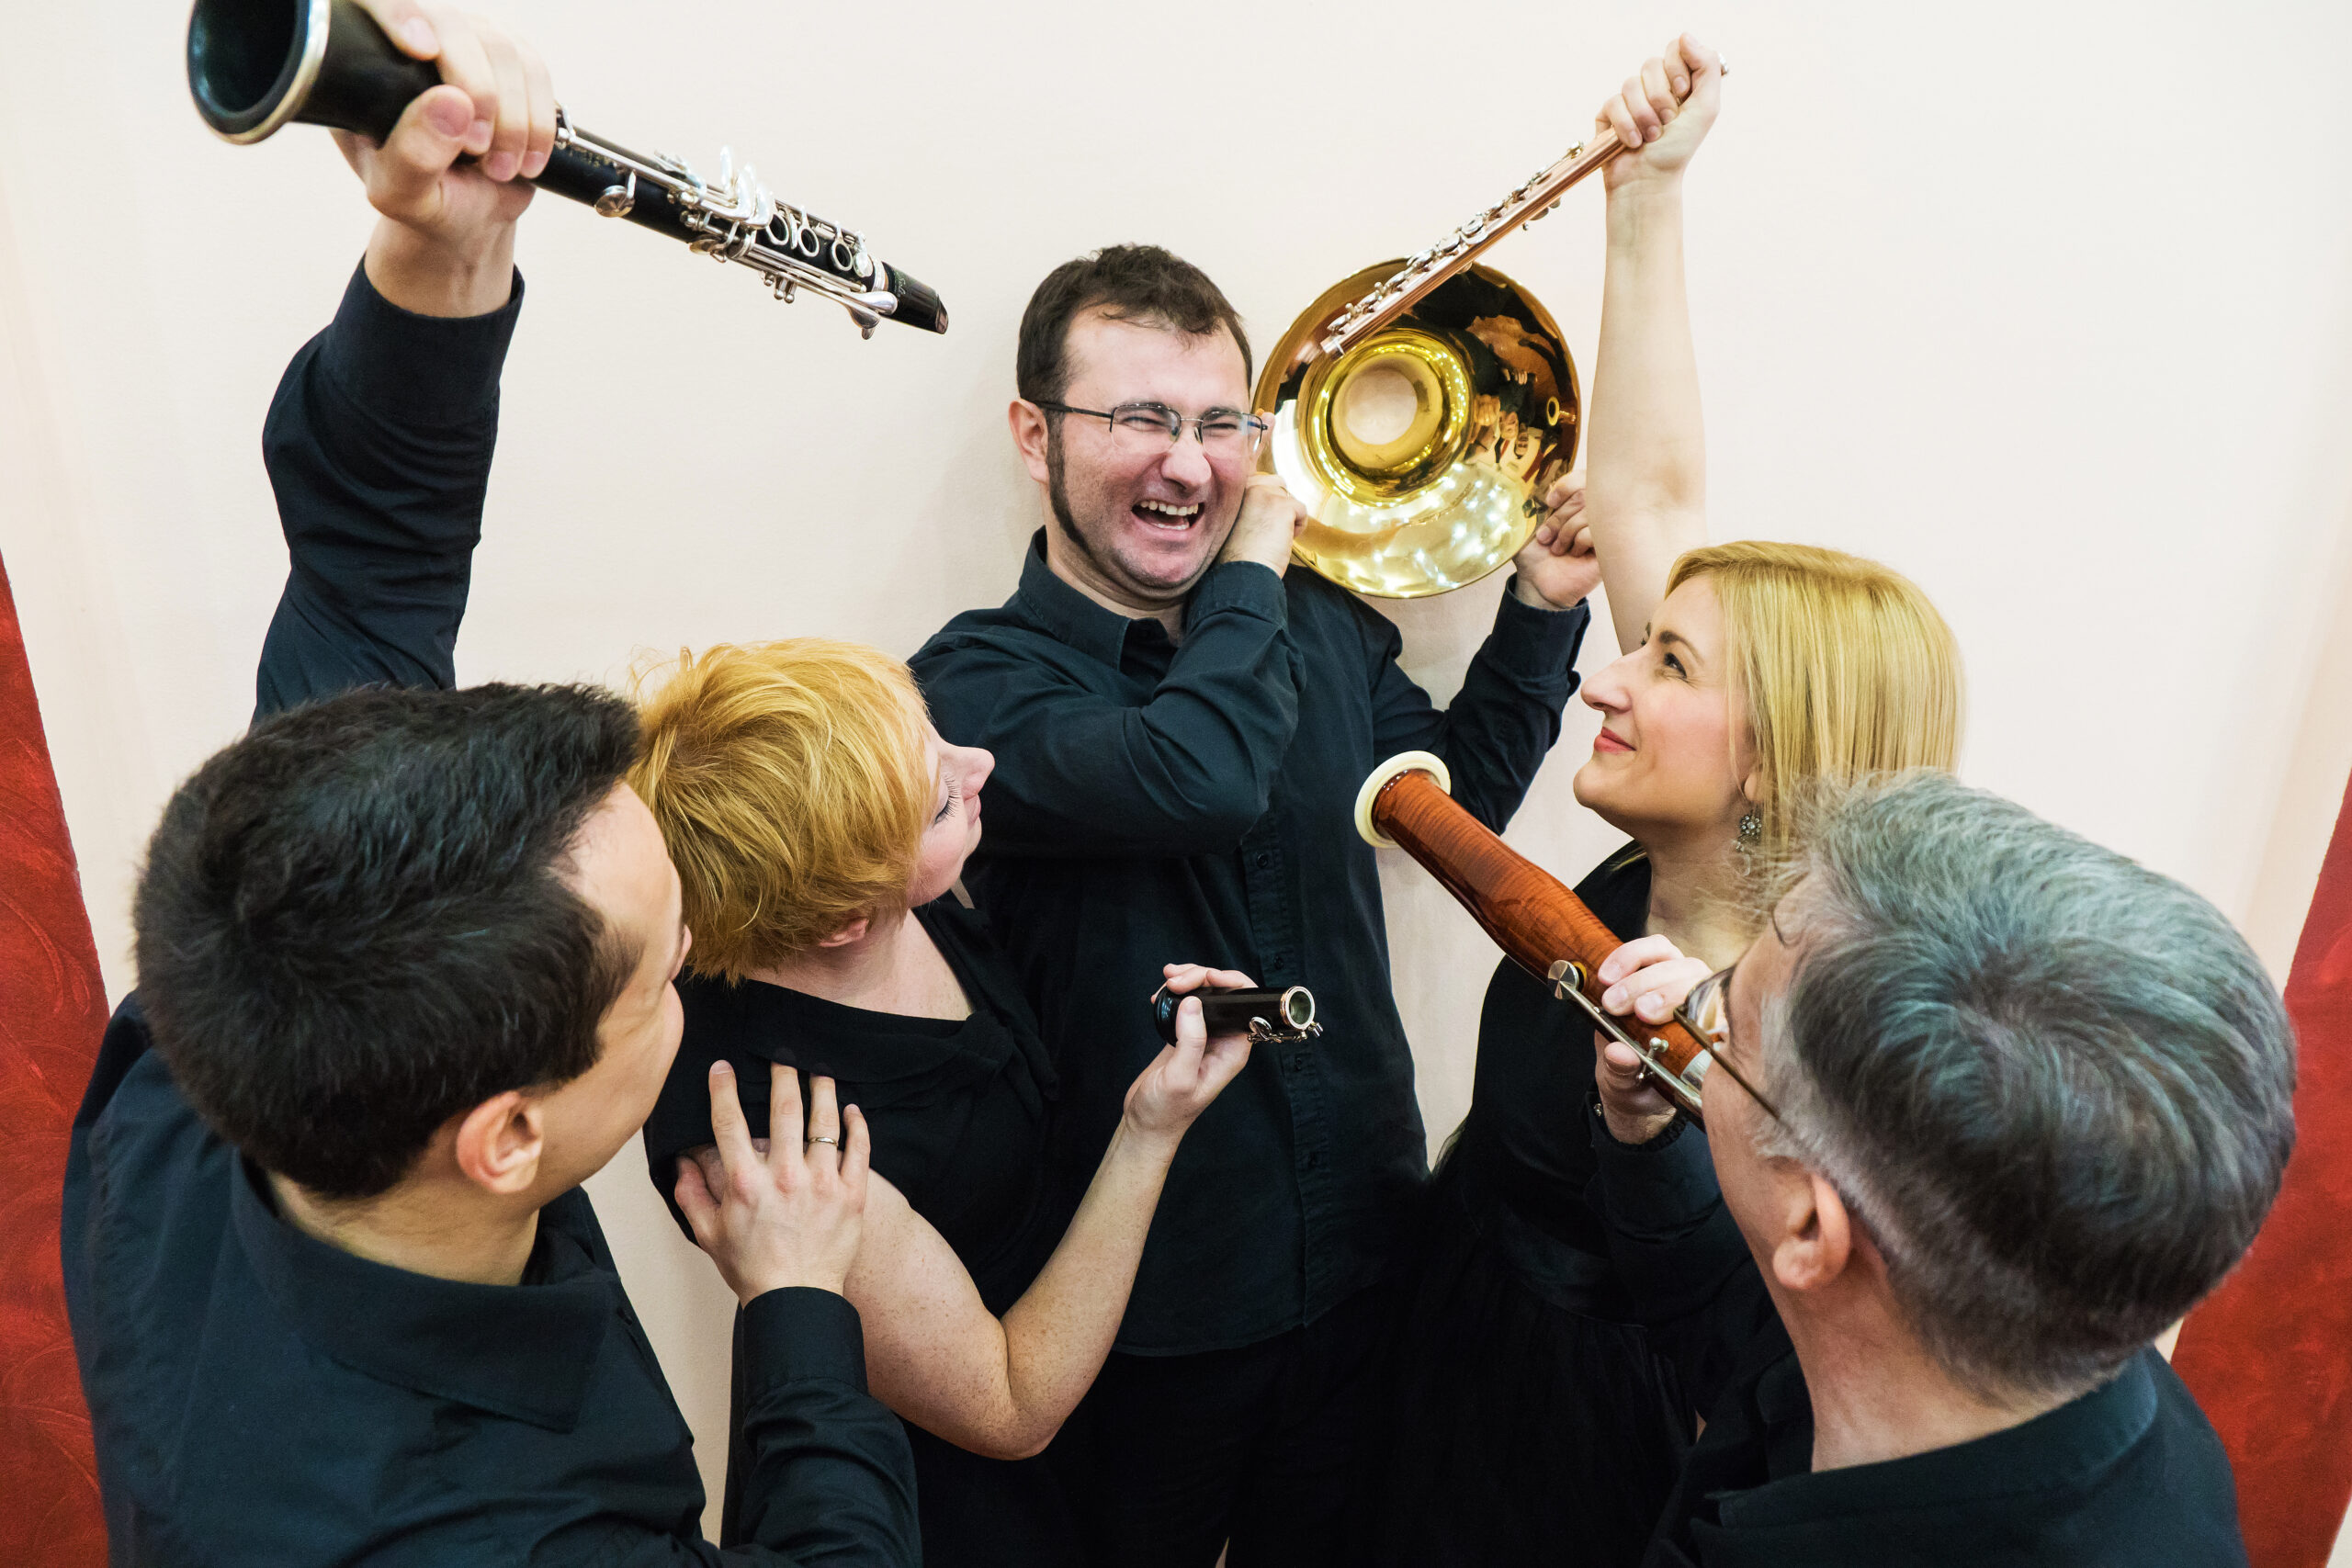 novosadski duvački kvintet, na slici nekoliko muzičara drži svoje instrumente prema jednom koji stoji u centru i jako se smeje svojim kolegama